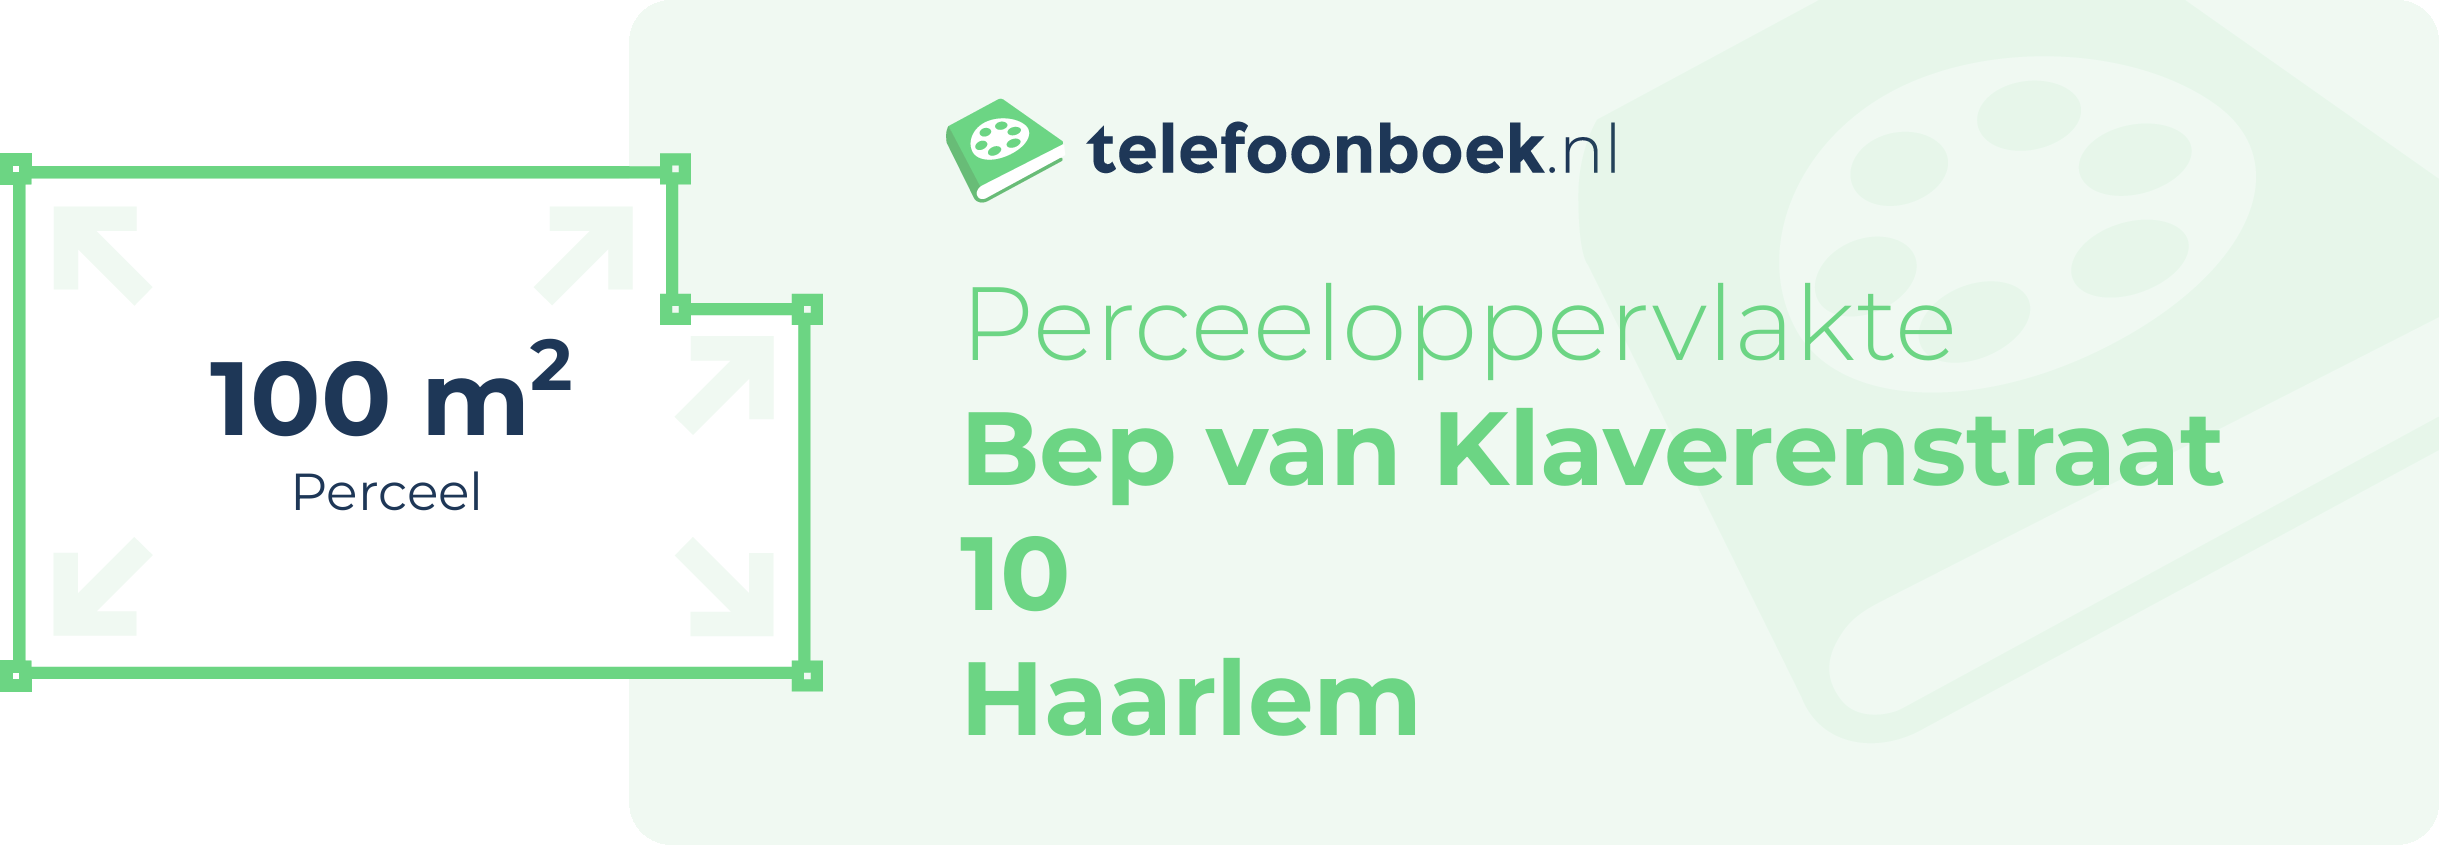 Perceeloppervlakte Bep Van Klaverenstraat 10 Haarlem